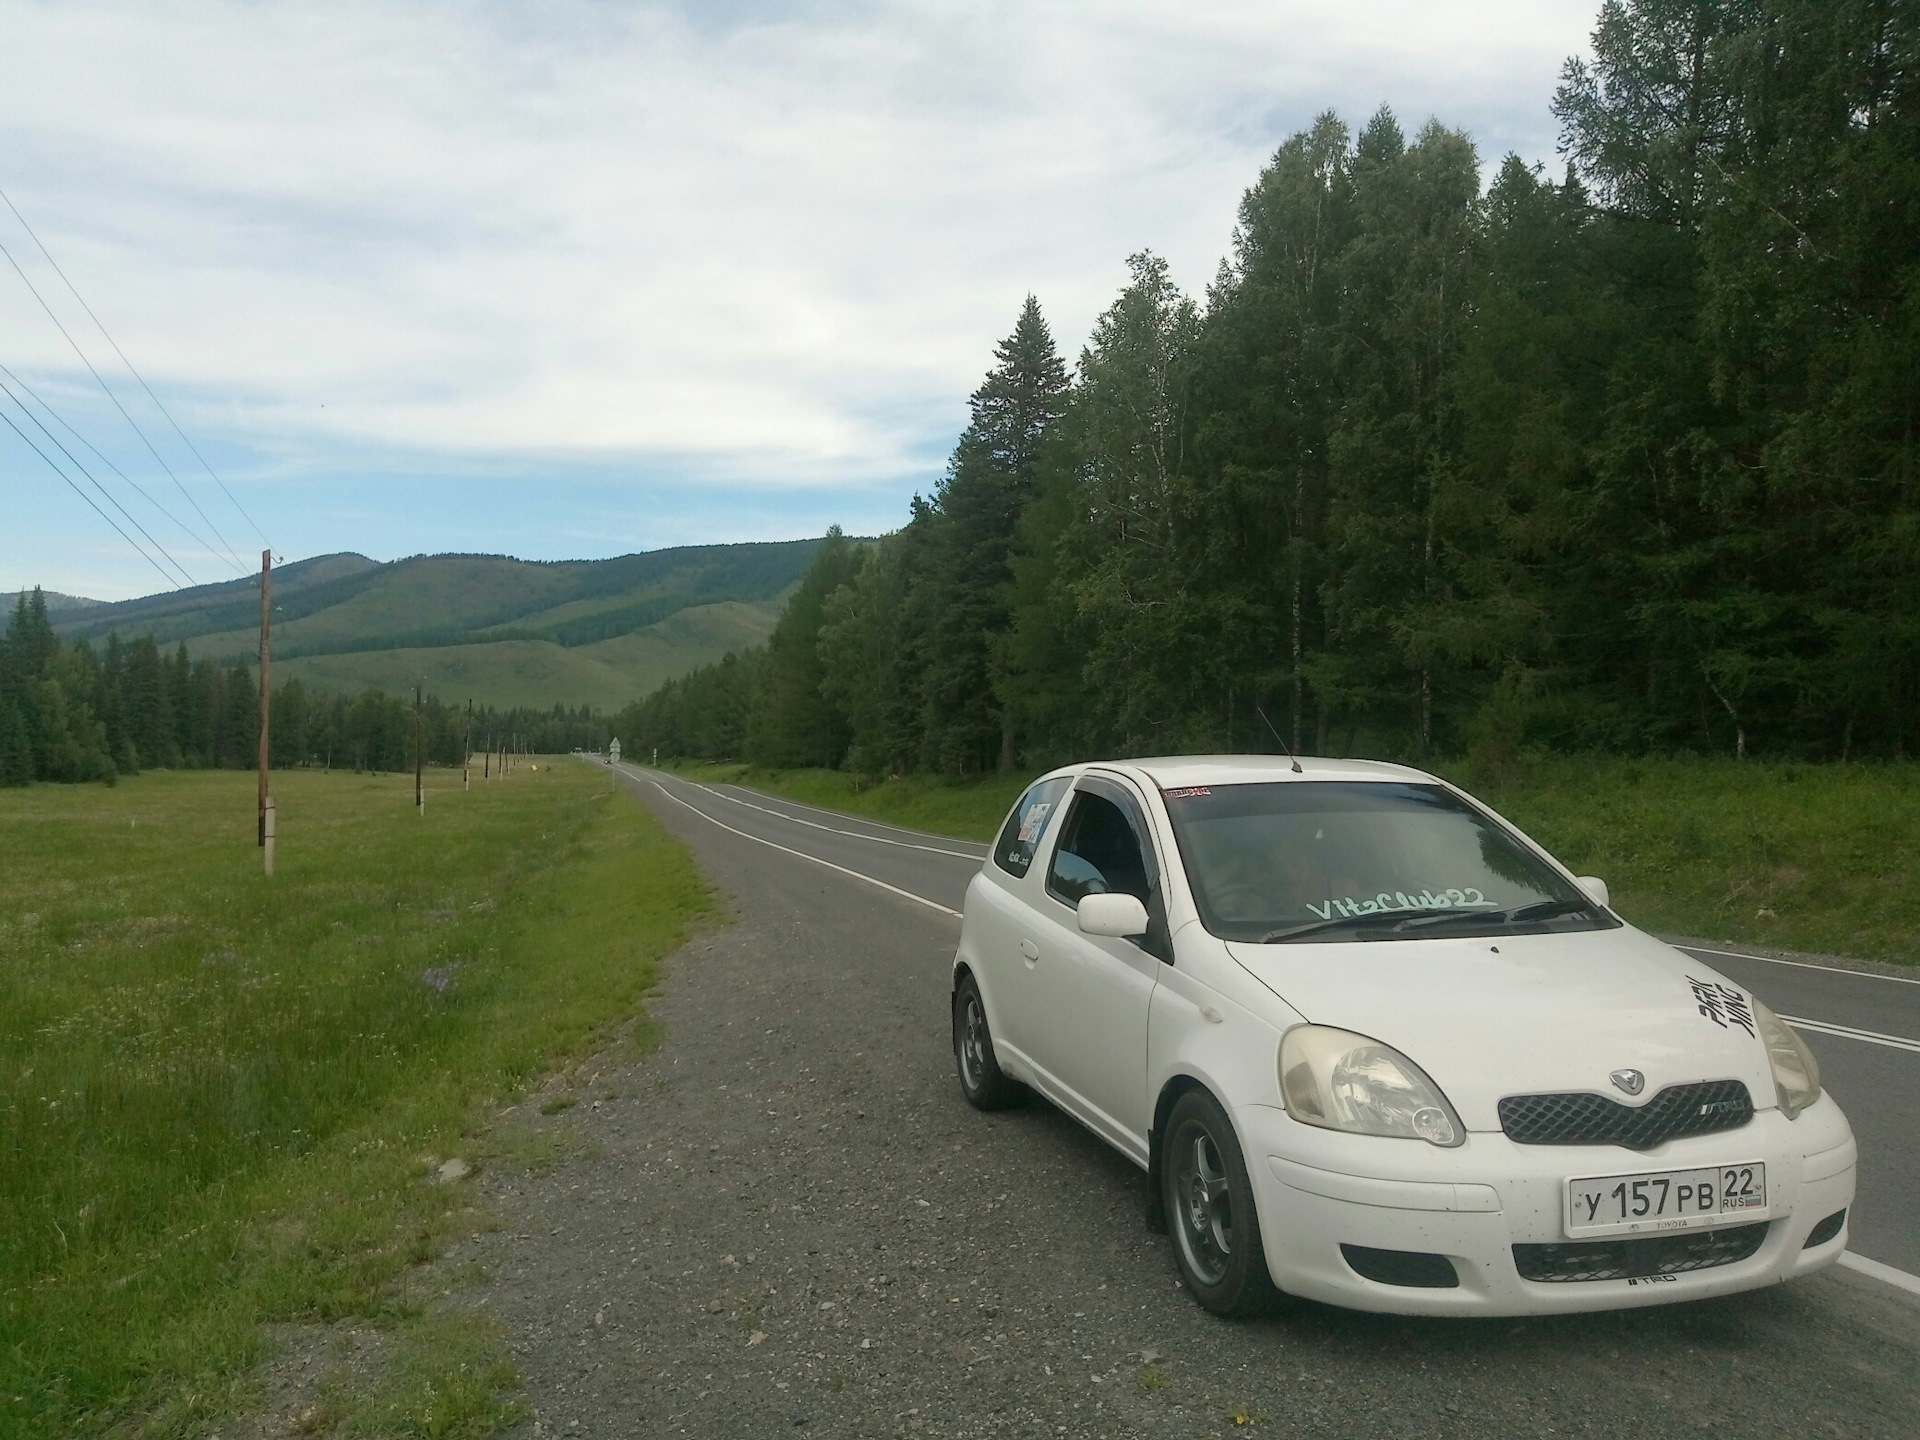 Дром республика алтай автомобили. Toyota Vitz 4wd. Toyota Altay. Поездка в горный Алтай на Тойота Королла 1,6 2012. В горный Алтай на Тойота Виш.